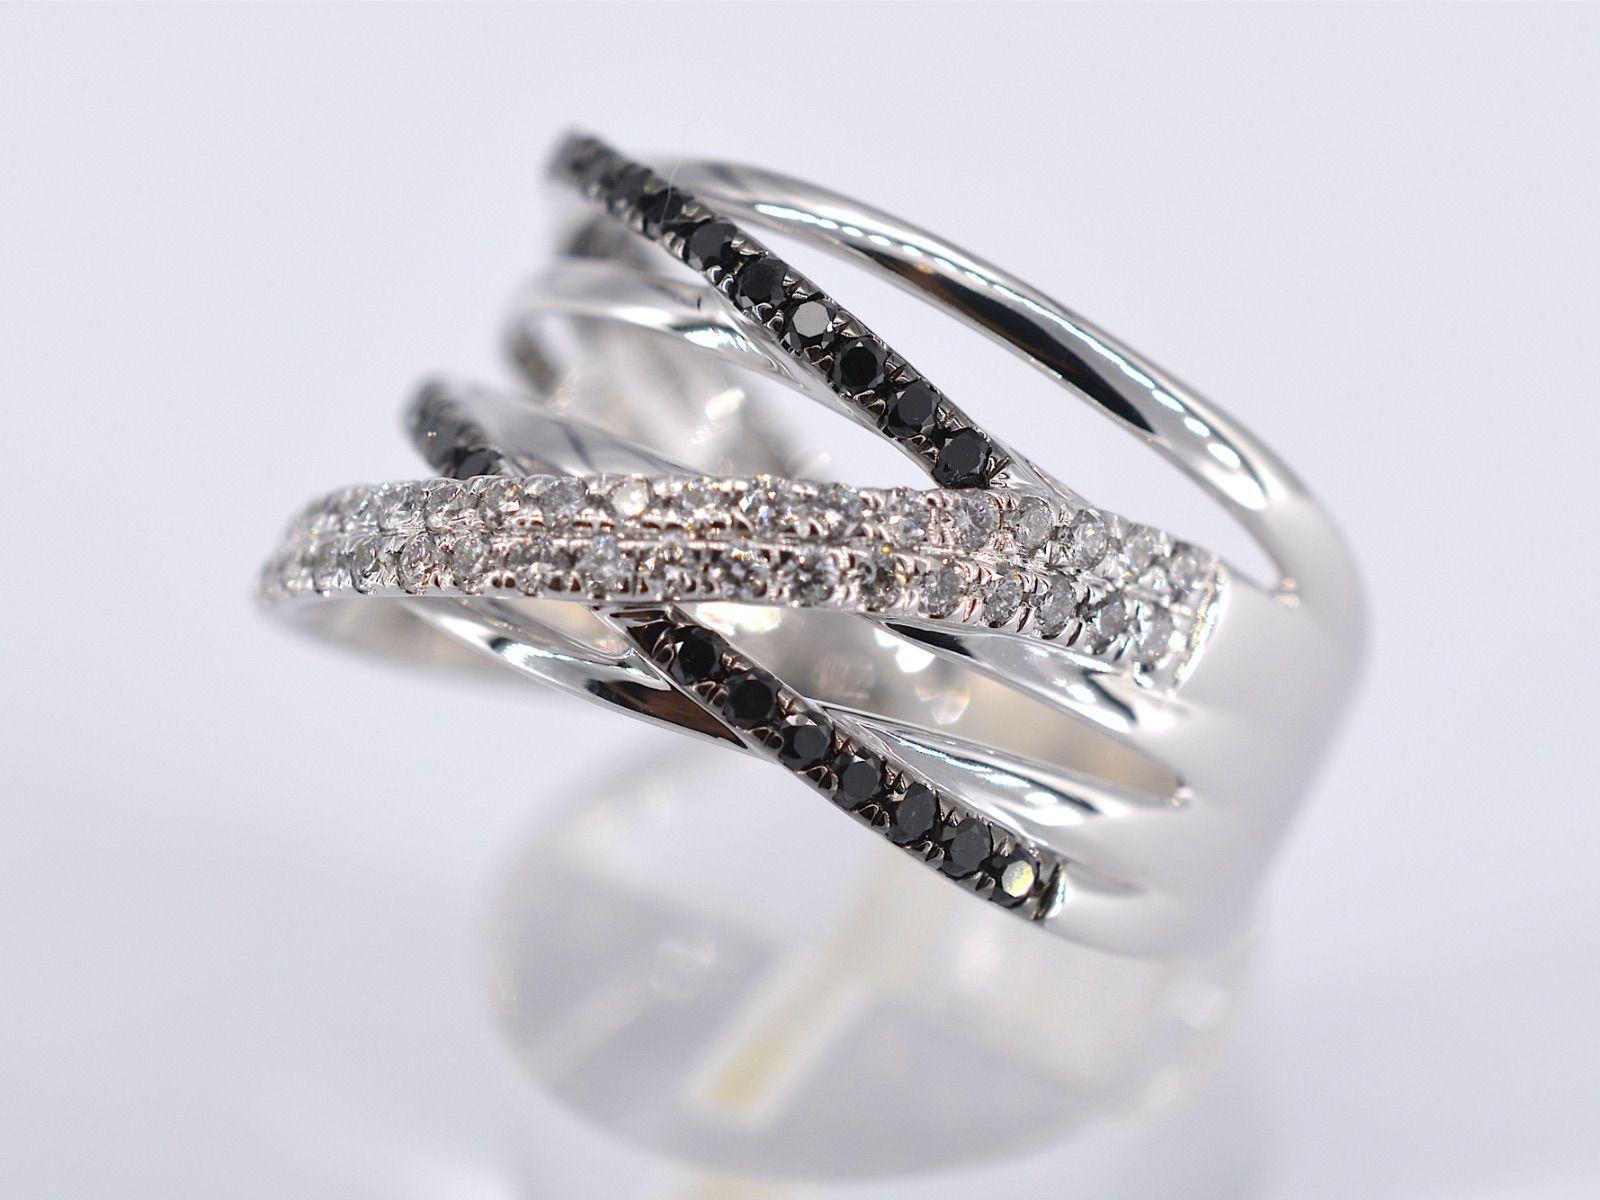 Brilliant Cut White Gold Design Ring with White and Black Brilliant Diamonds For Sale